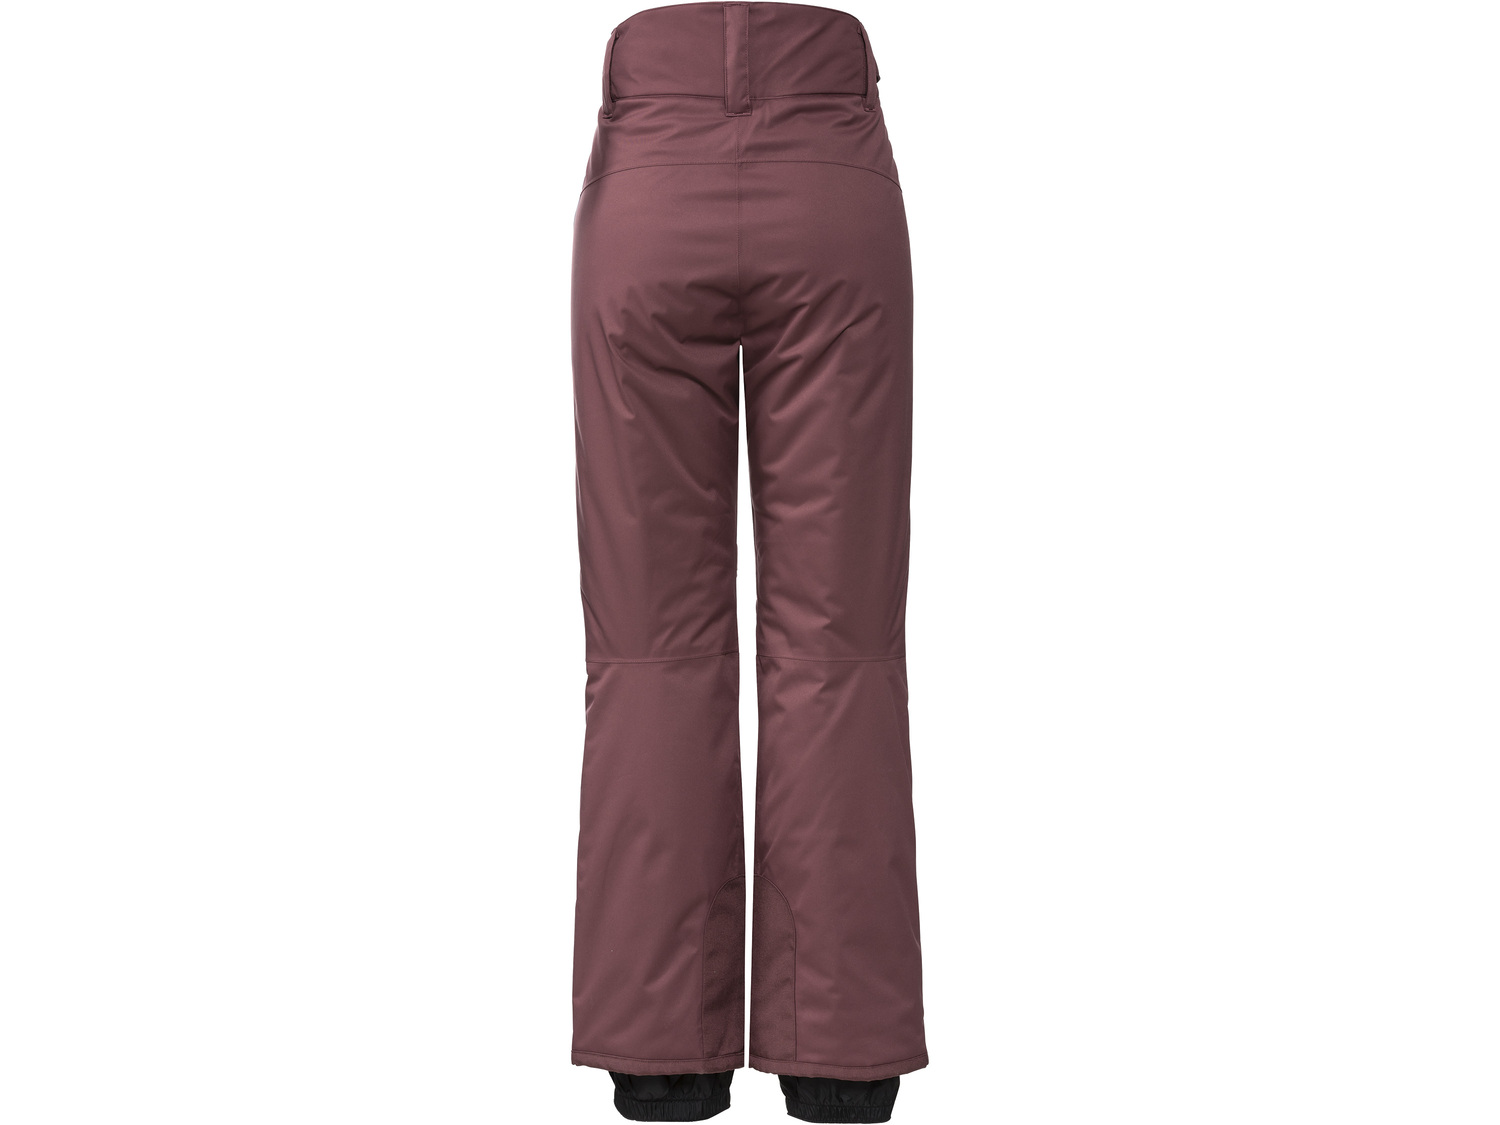 Funkcyjne spodnie narciarskie Crivit Pro, cena 119,00 PLN 
damskie 
- rozmiary: ...